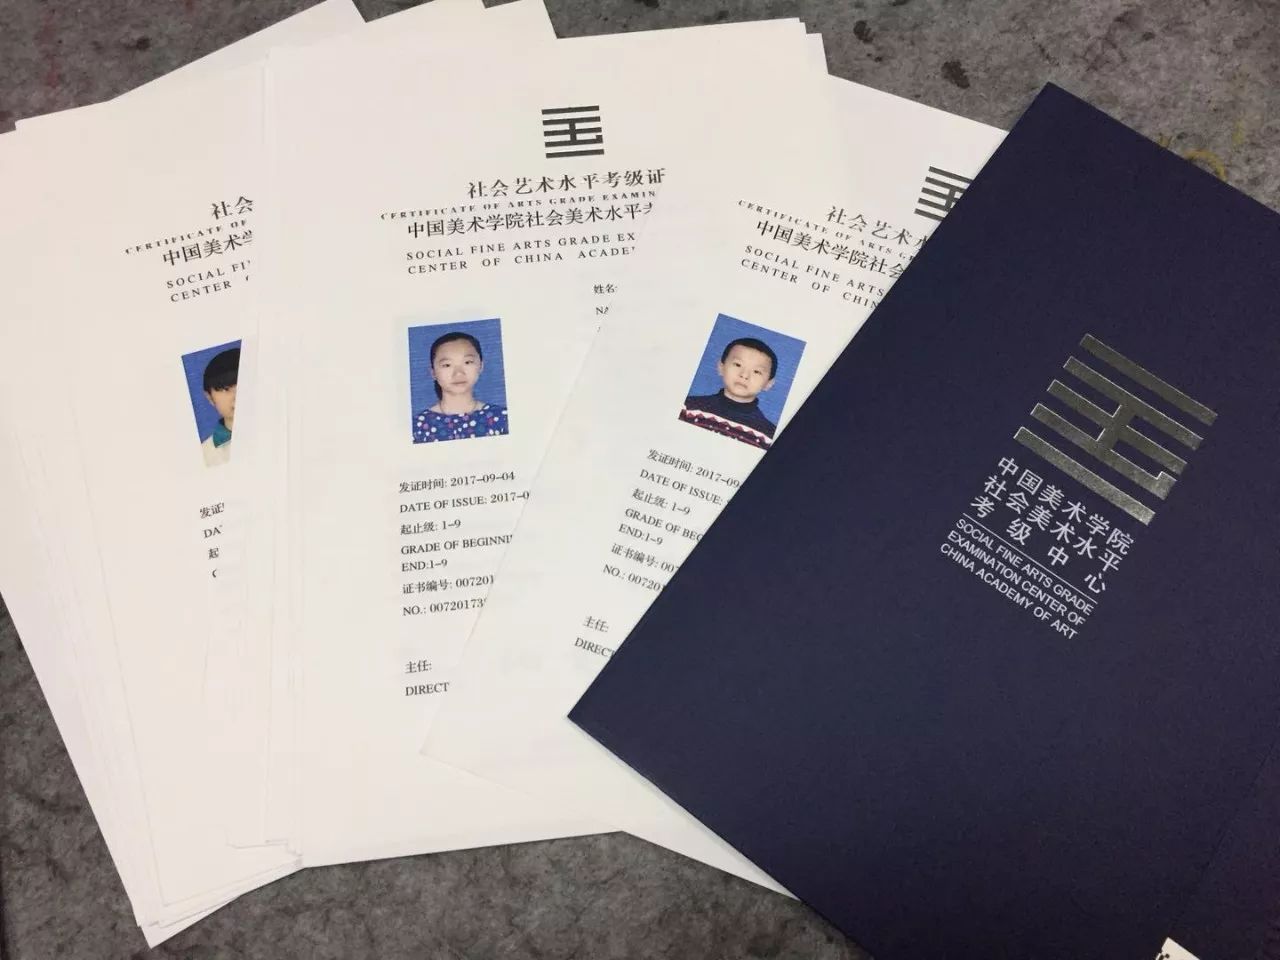 2017年上半年中国美术学院广州地区书画等级考试证书颁发通知